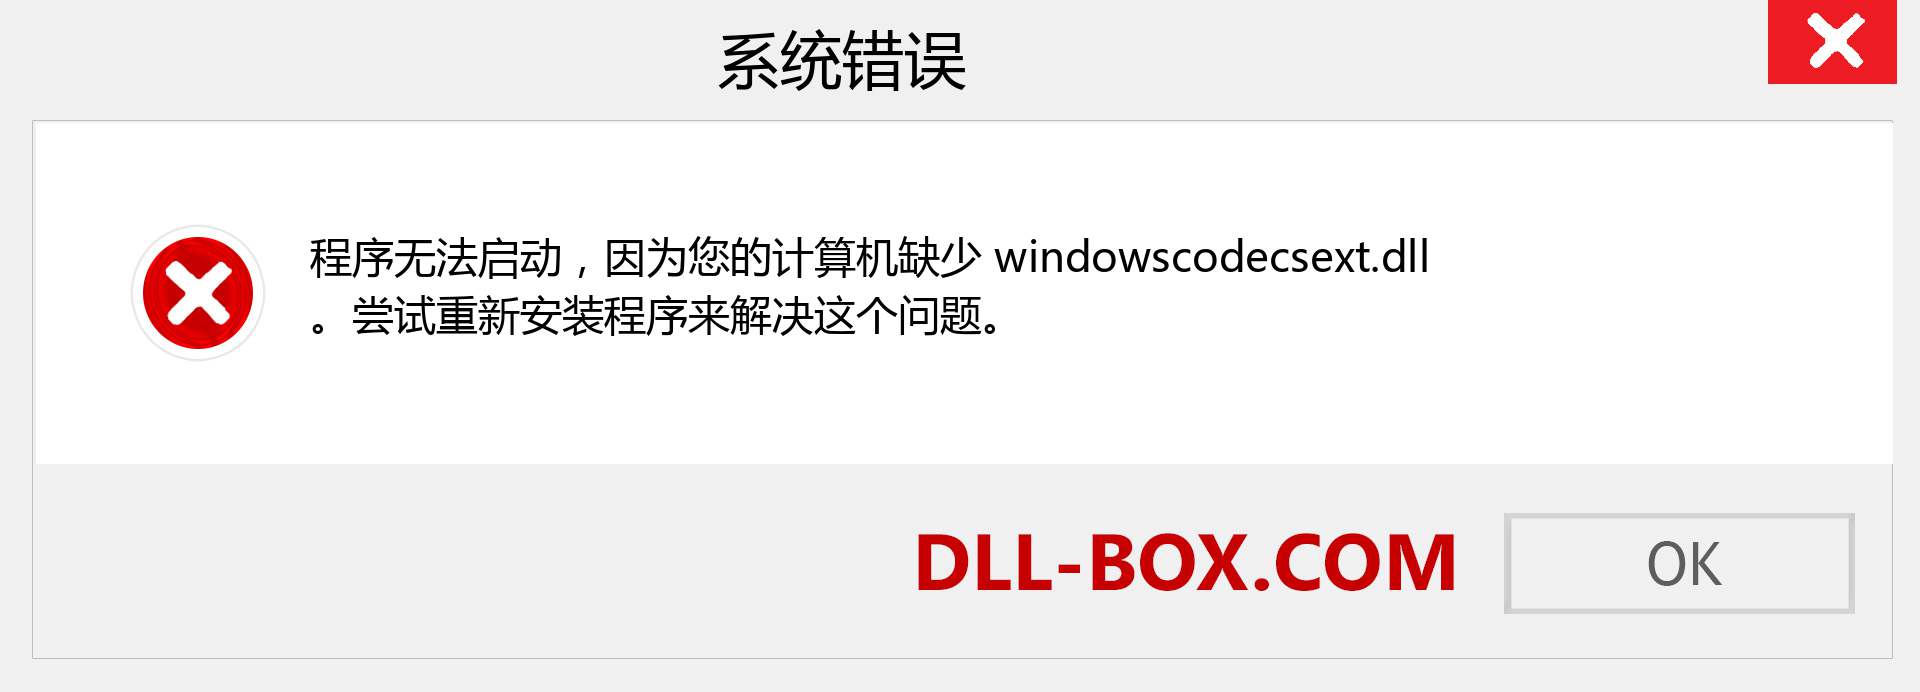 windowscodecsext.dll 文件丢失？。 适用于 Windows 7、8、10 的下载 - 修复 Windows、照片、图像上的 windowscodecsext dll 丢失错误